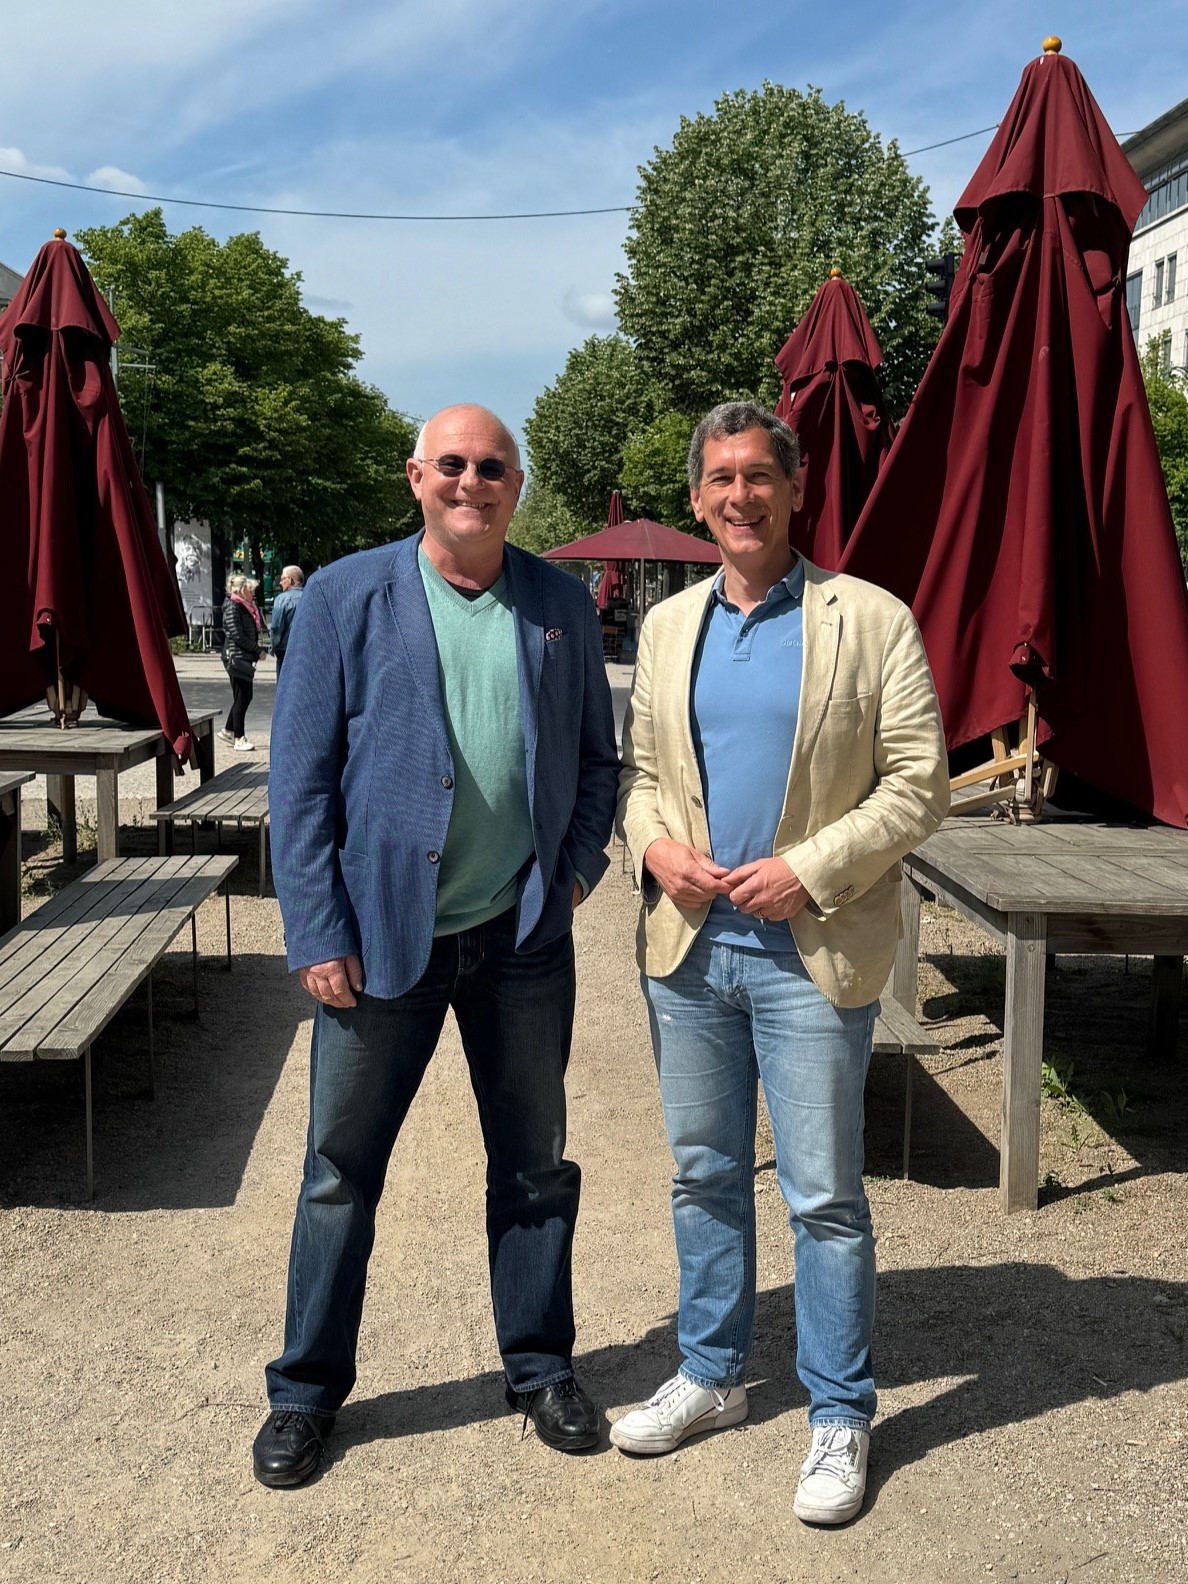 Foto: Auf dem Foto sind Michael Löher und Jens Kamieth zu sehen, die nebeneinander auf einer Terrasse stehen. Im Hintergrund stehen weinrote Sonnenschirme, Holztische und Holzstühle.